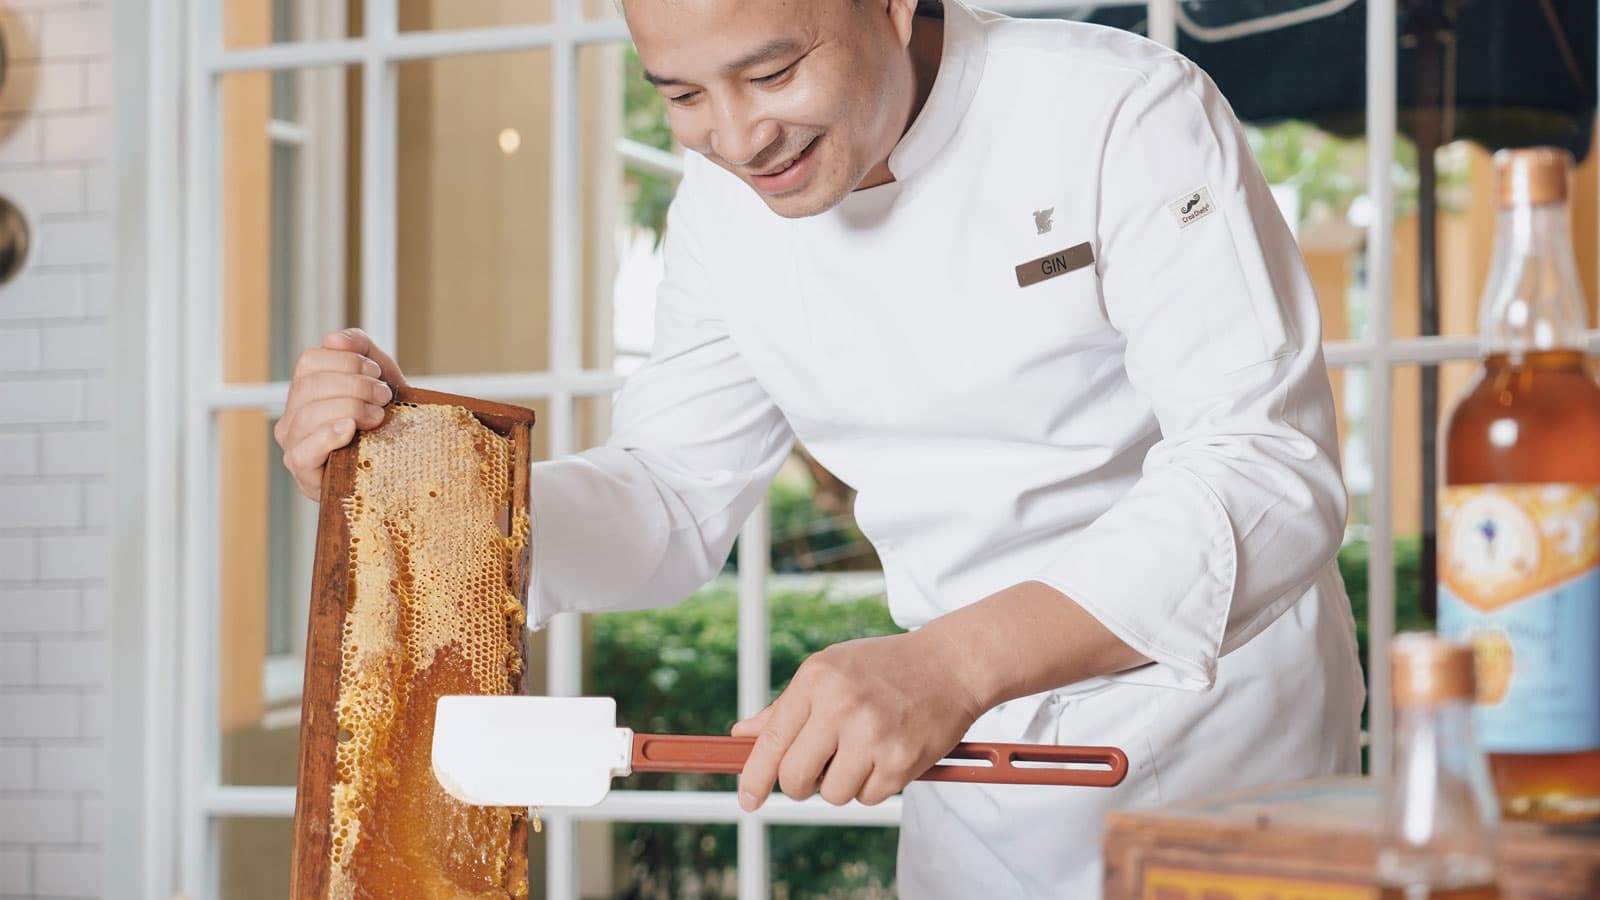 Tuần lễ ẩm thực quốc tế tôn vinh các giá trị bền vững tại JW Marriott Phú Quốc